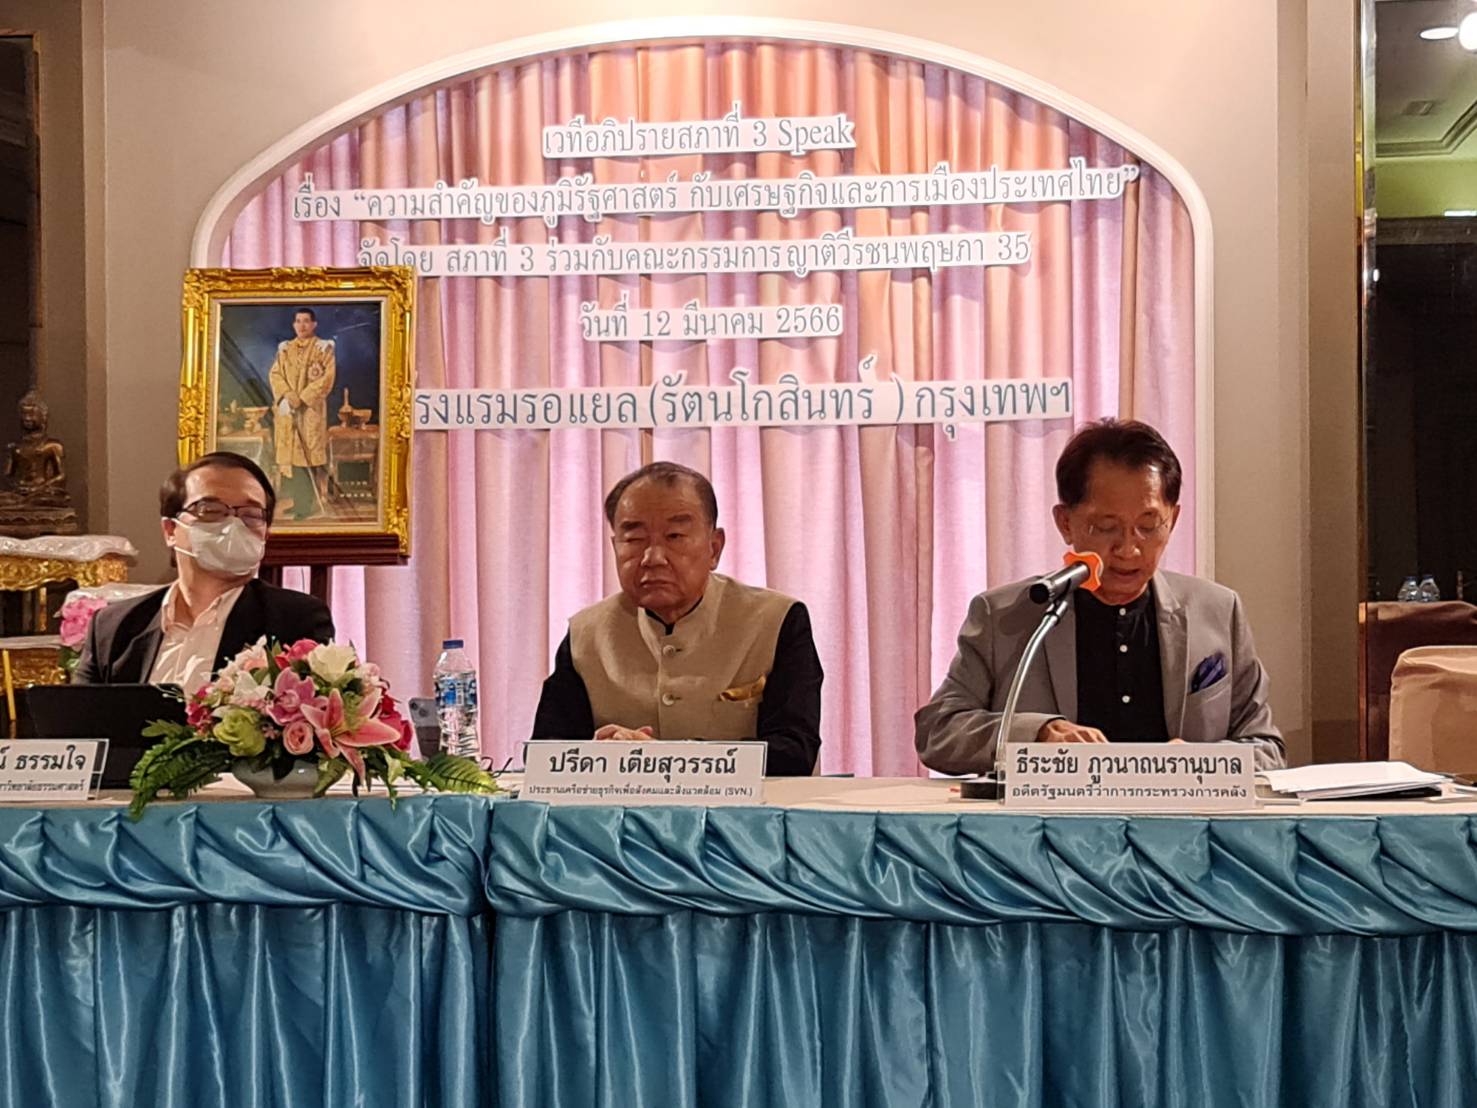 เสวนาภูมิรัฐศาสตร์แนะเปิดพื้นที่ประชาธิปไตยสร้างบทบาทไทยในอาเซียน รับมือความขัดแย้งมหาอำนาจ